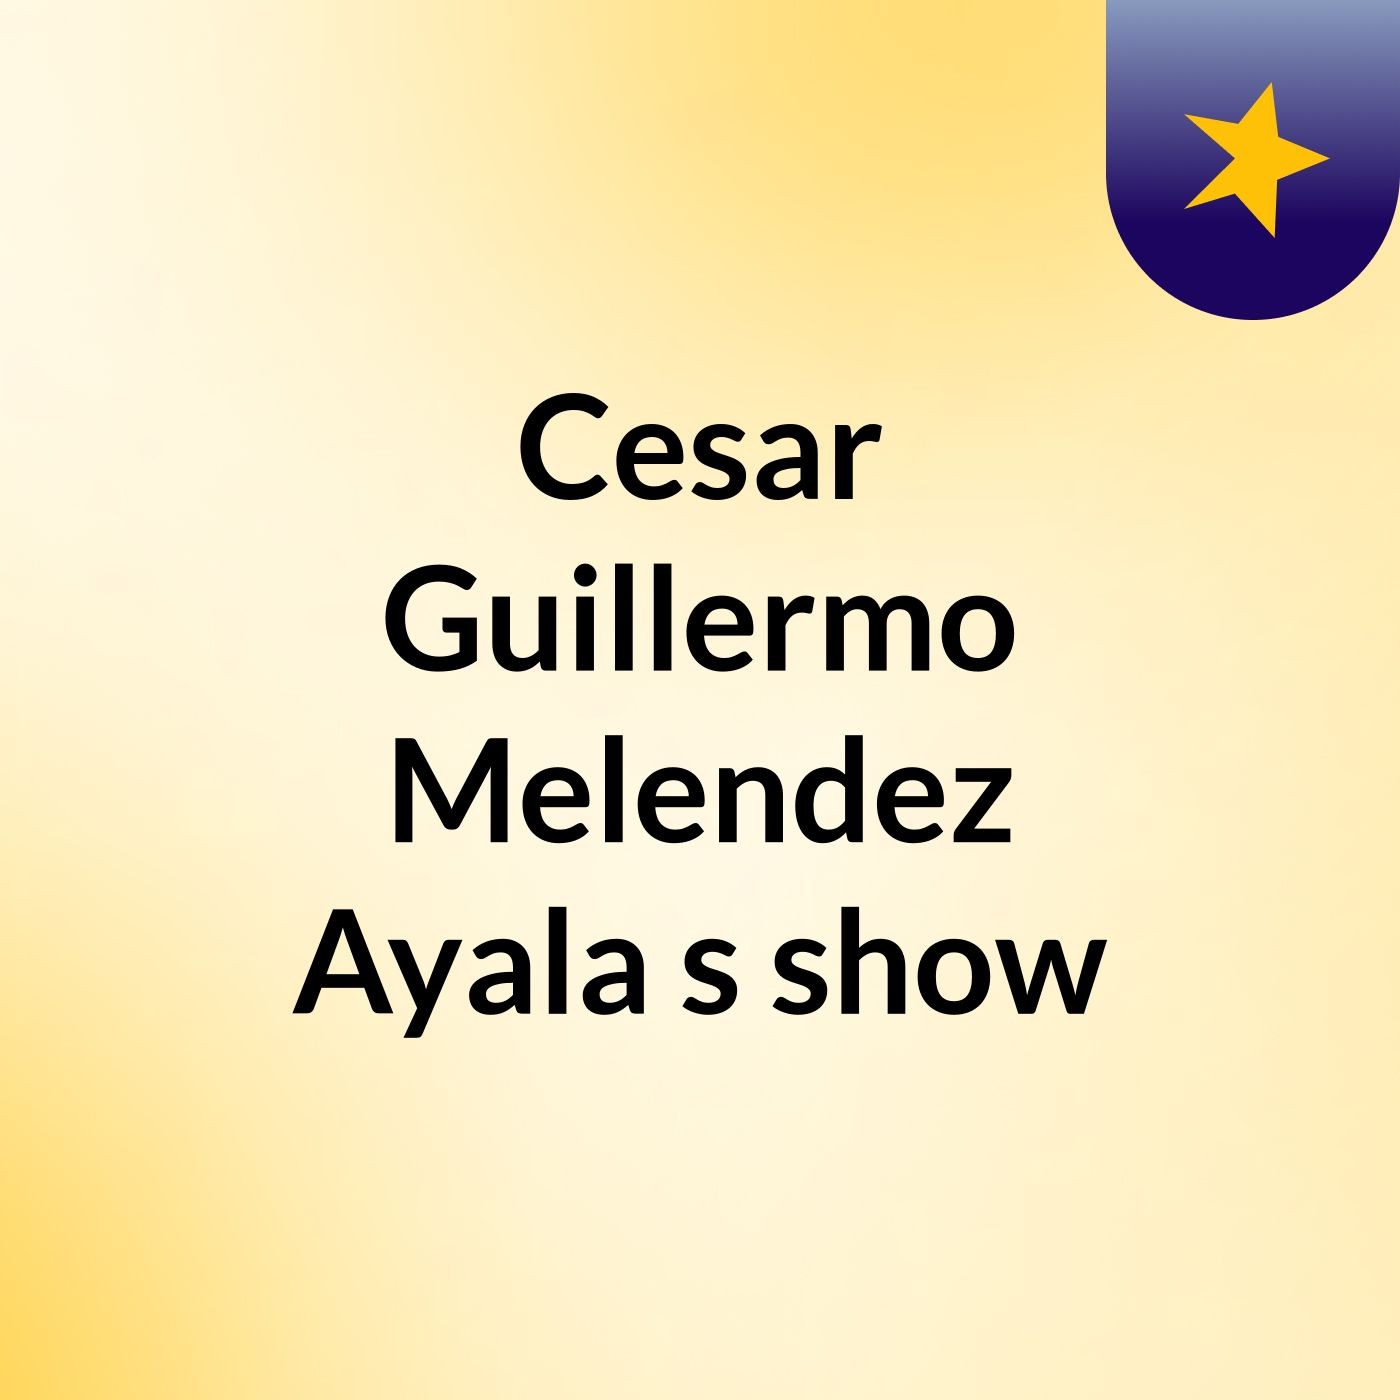 Episodio 11 - Cesar Guillermo Melendez Ayala's show